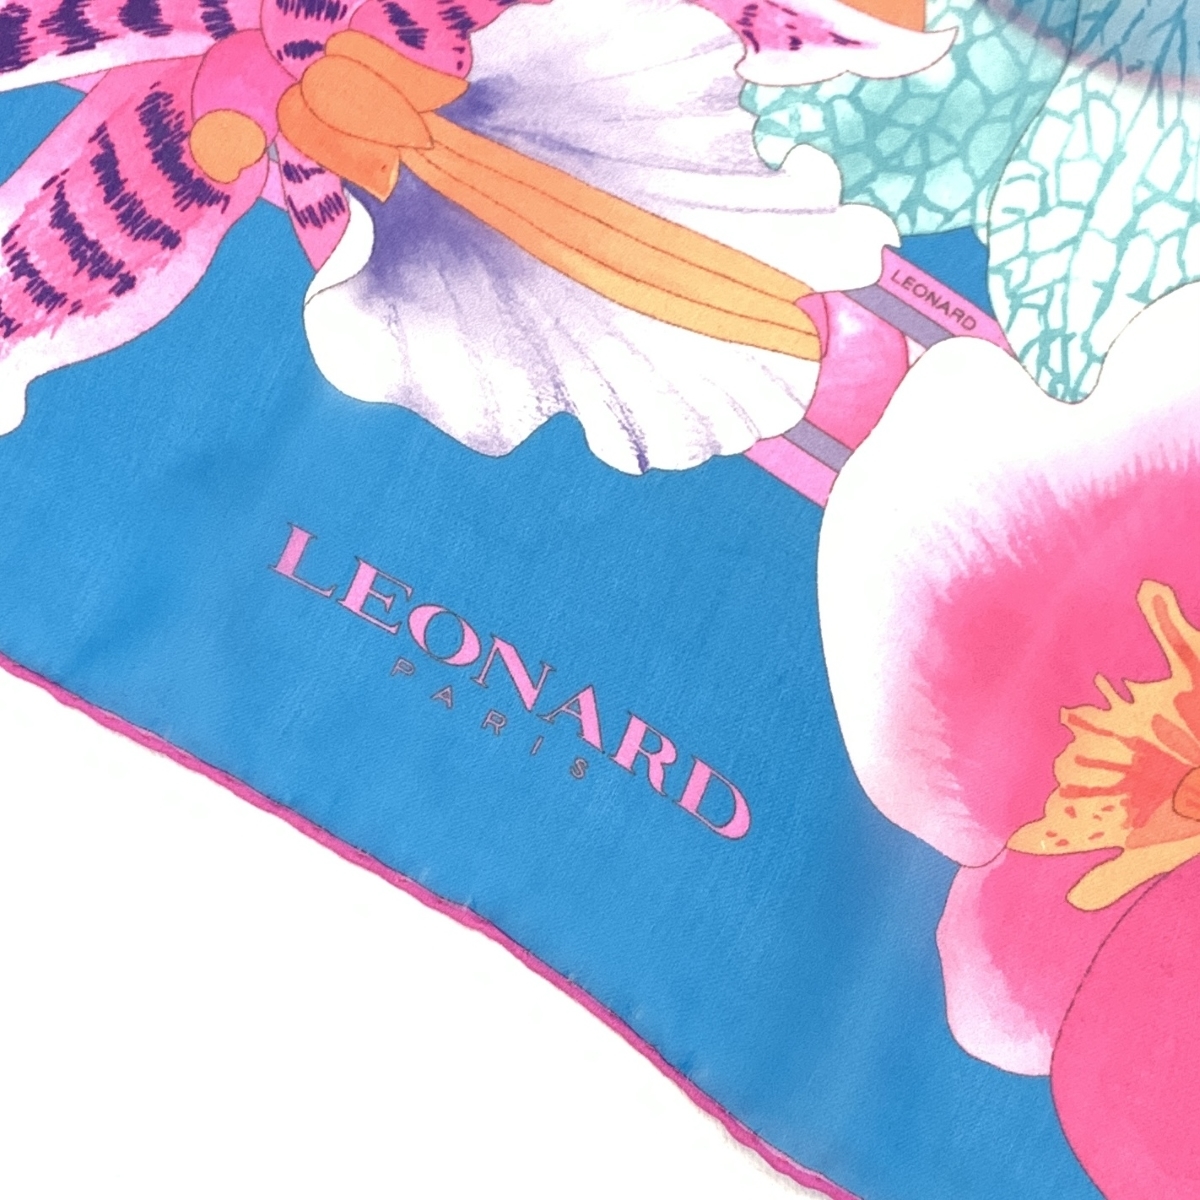 良好◆LEONARD レオナール ストール◆ ブルー×ピンク シルク100% 花柄 レディース イタリア製 襟巻 服飾小物_画像3